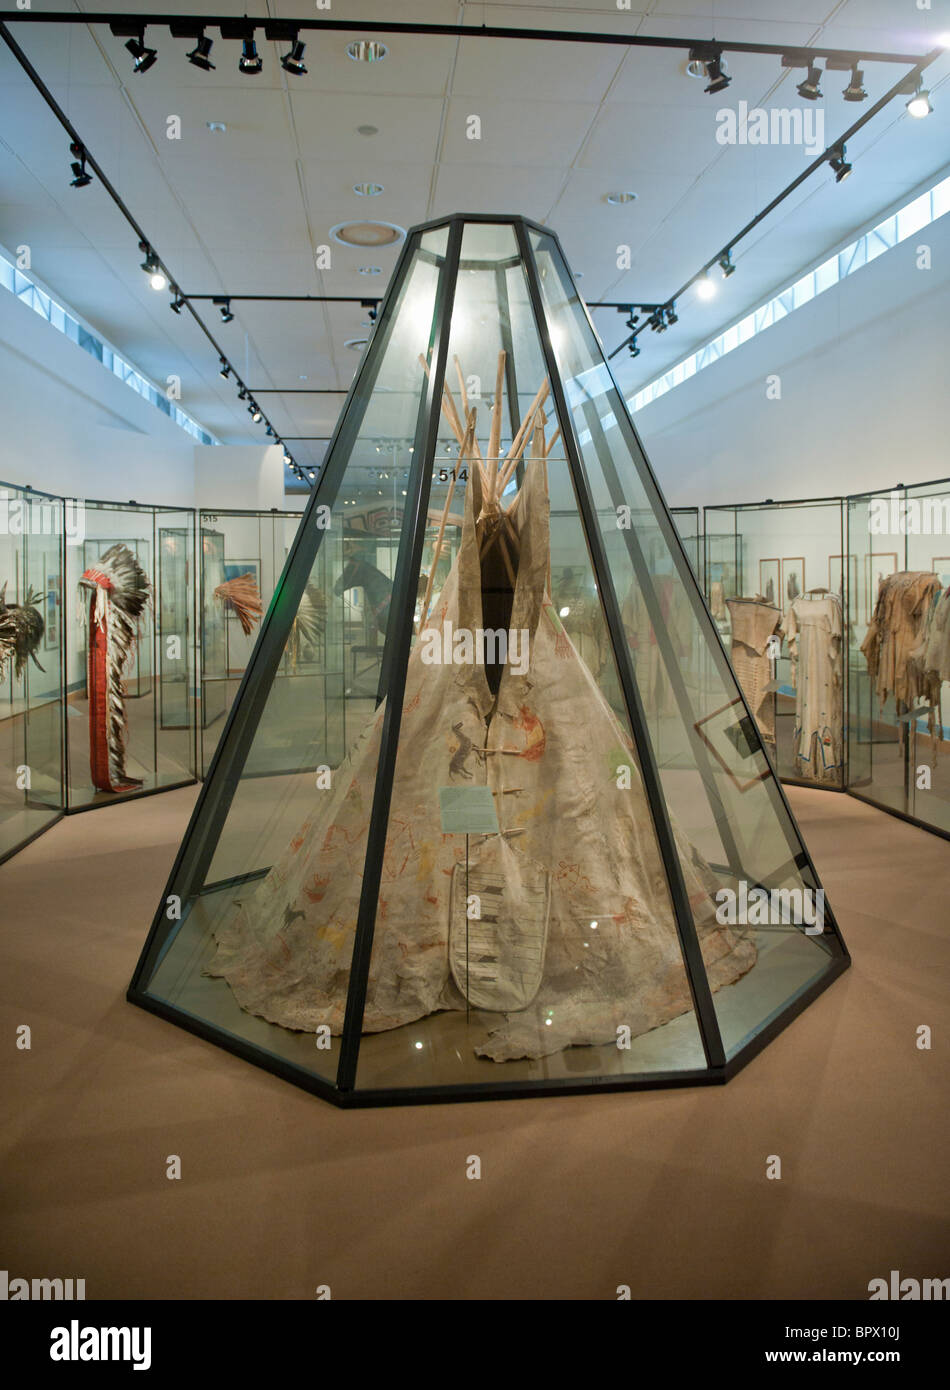 North American Native tente sur l'affichage à l'Ethnological Museum de Dahlem à Berlin Allemagne Banque D'Images